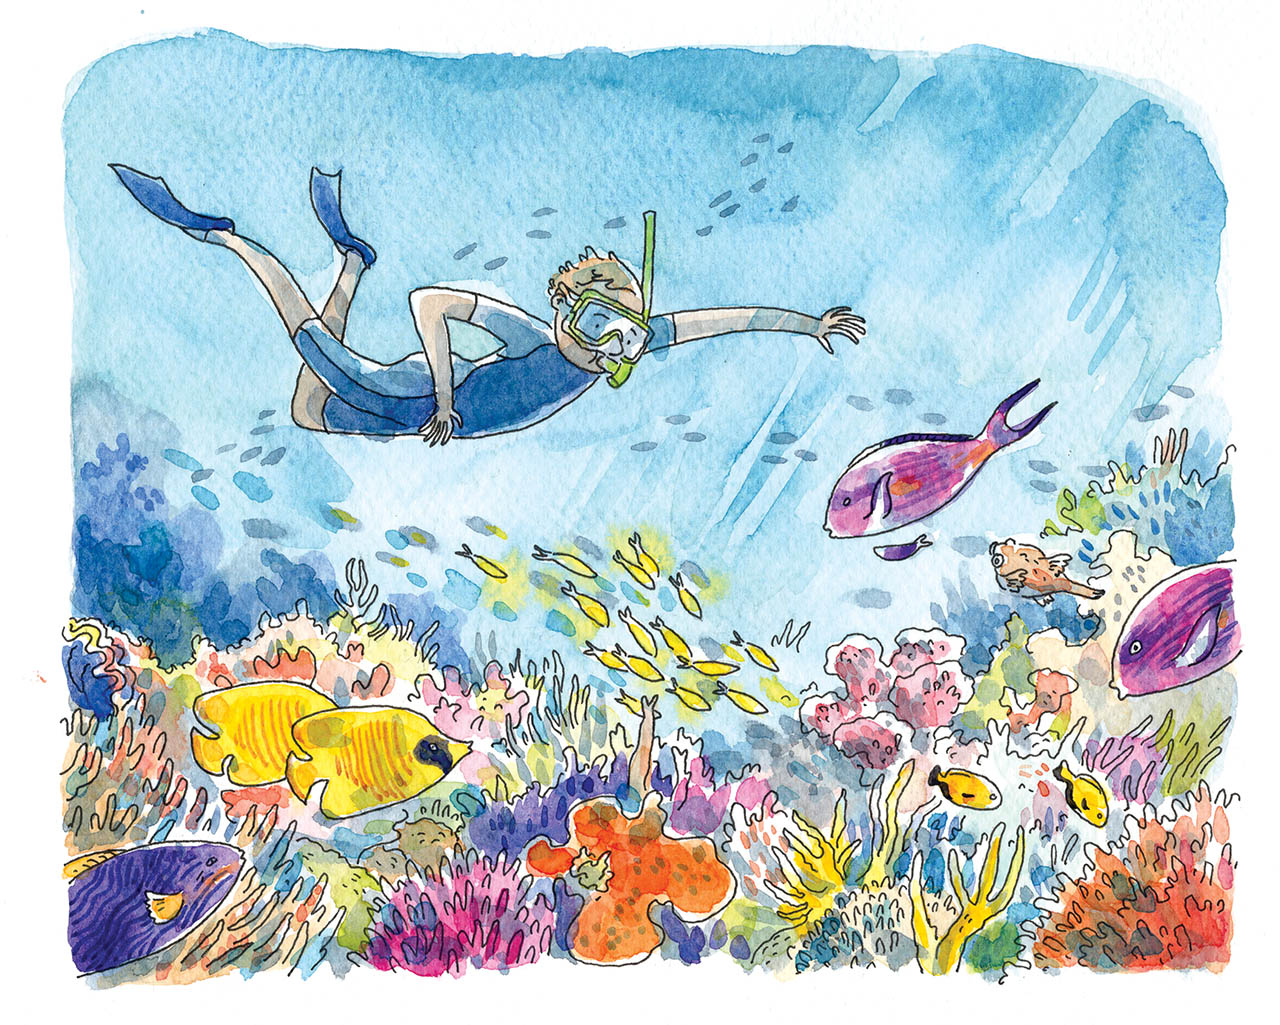 dessin à l'aquarelle issu d'un carnet de voyage en Australie représentant un enfant qui fait de la plongée sous-marine avec masque et tuba dans un récif corallien, avec coraux et poissons colorés